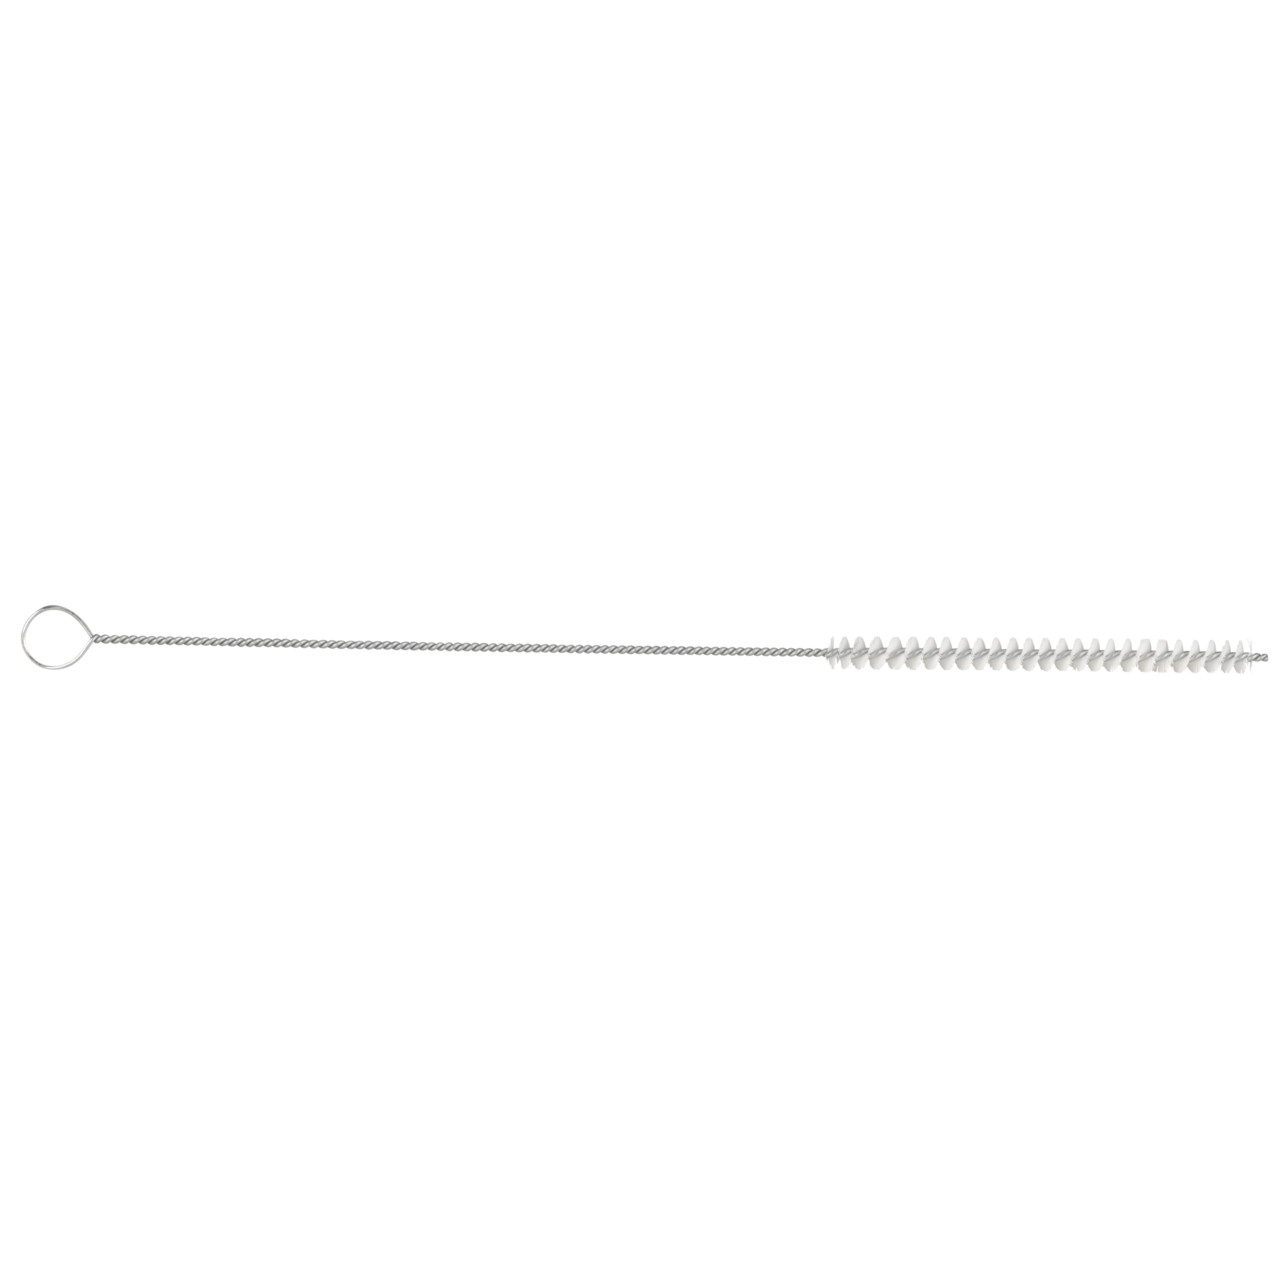 TYROLIT cepillo cilíndrico para tubos D-I 20-300 Para uso universal, forma: 18ROODG - (cepillo cilíndrico para tubos), Art. 34203575